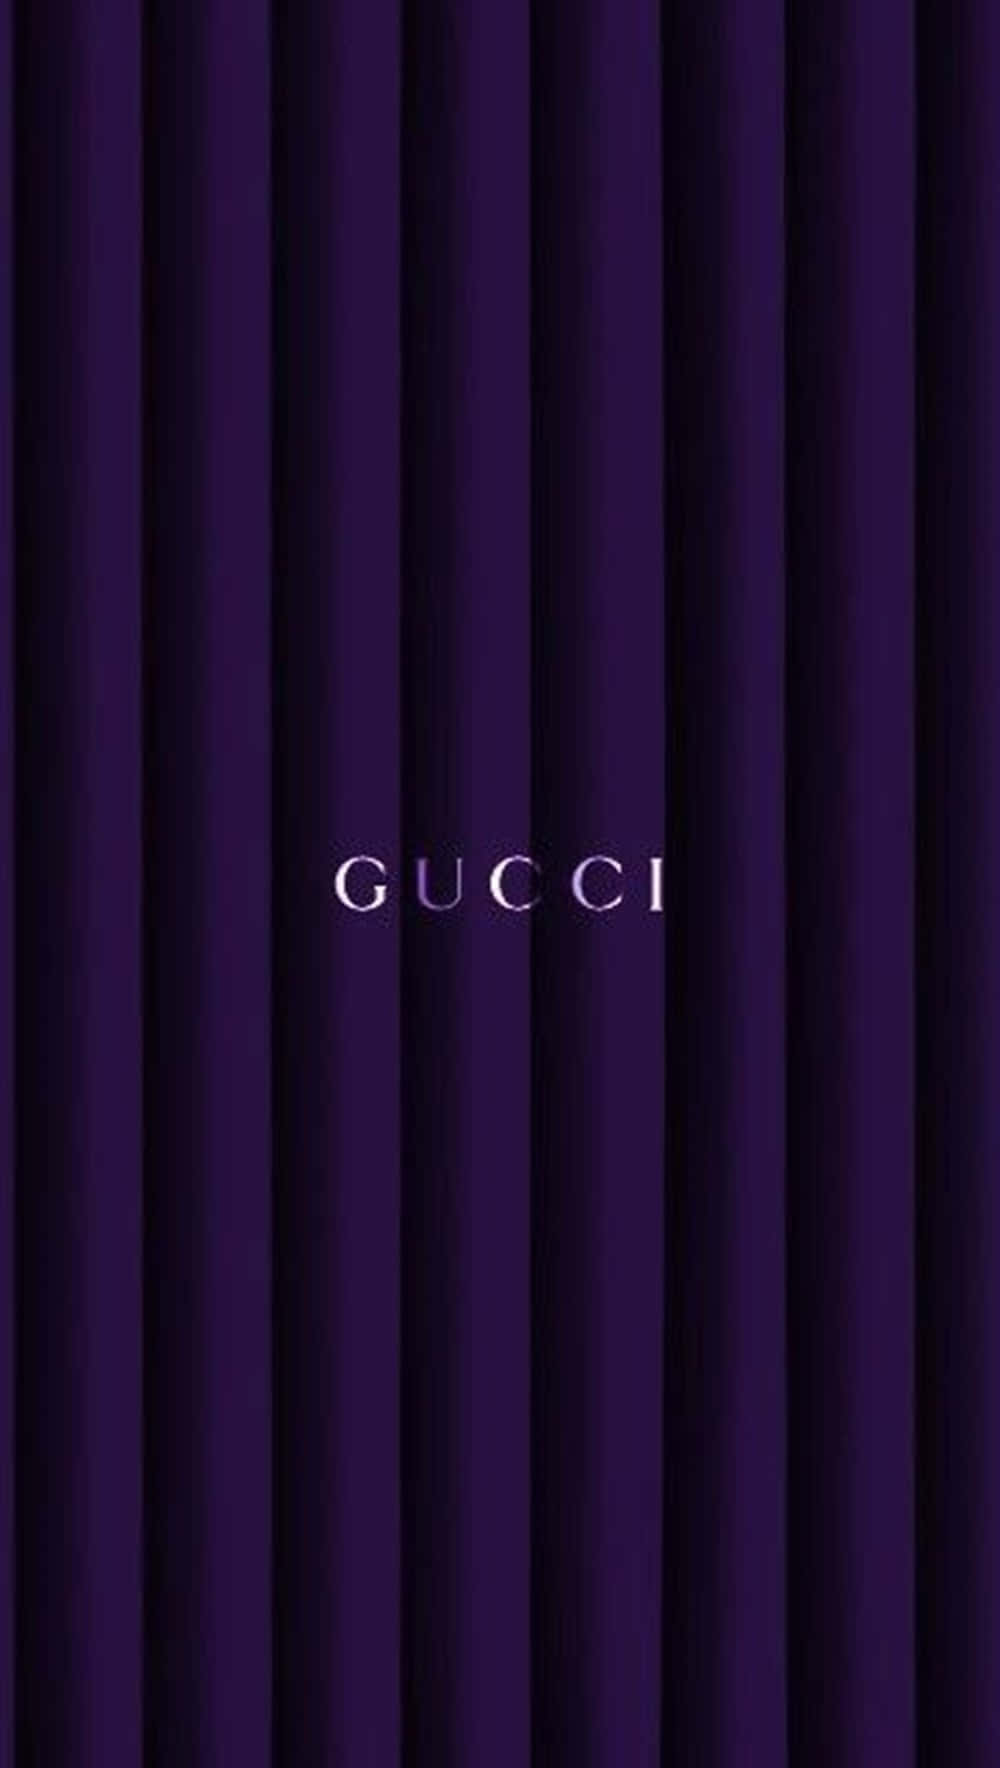 Zeigensie Ihren Stil In Lila Gucci Wallpaper